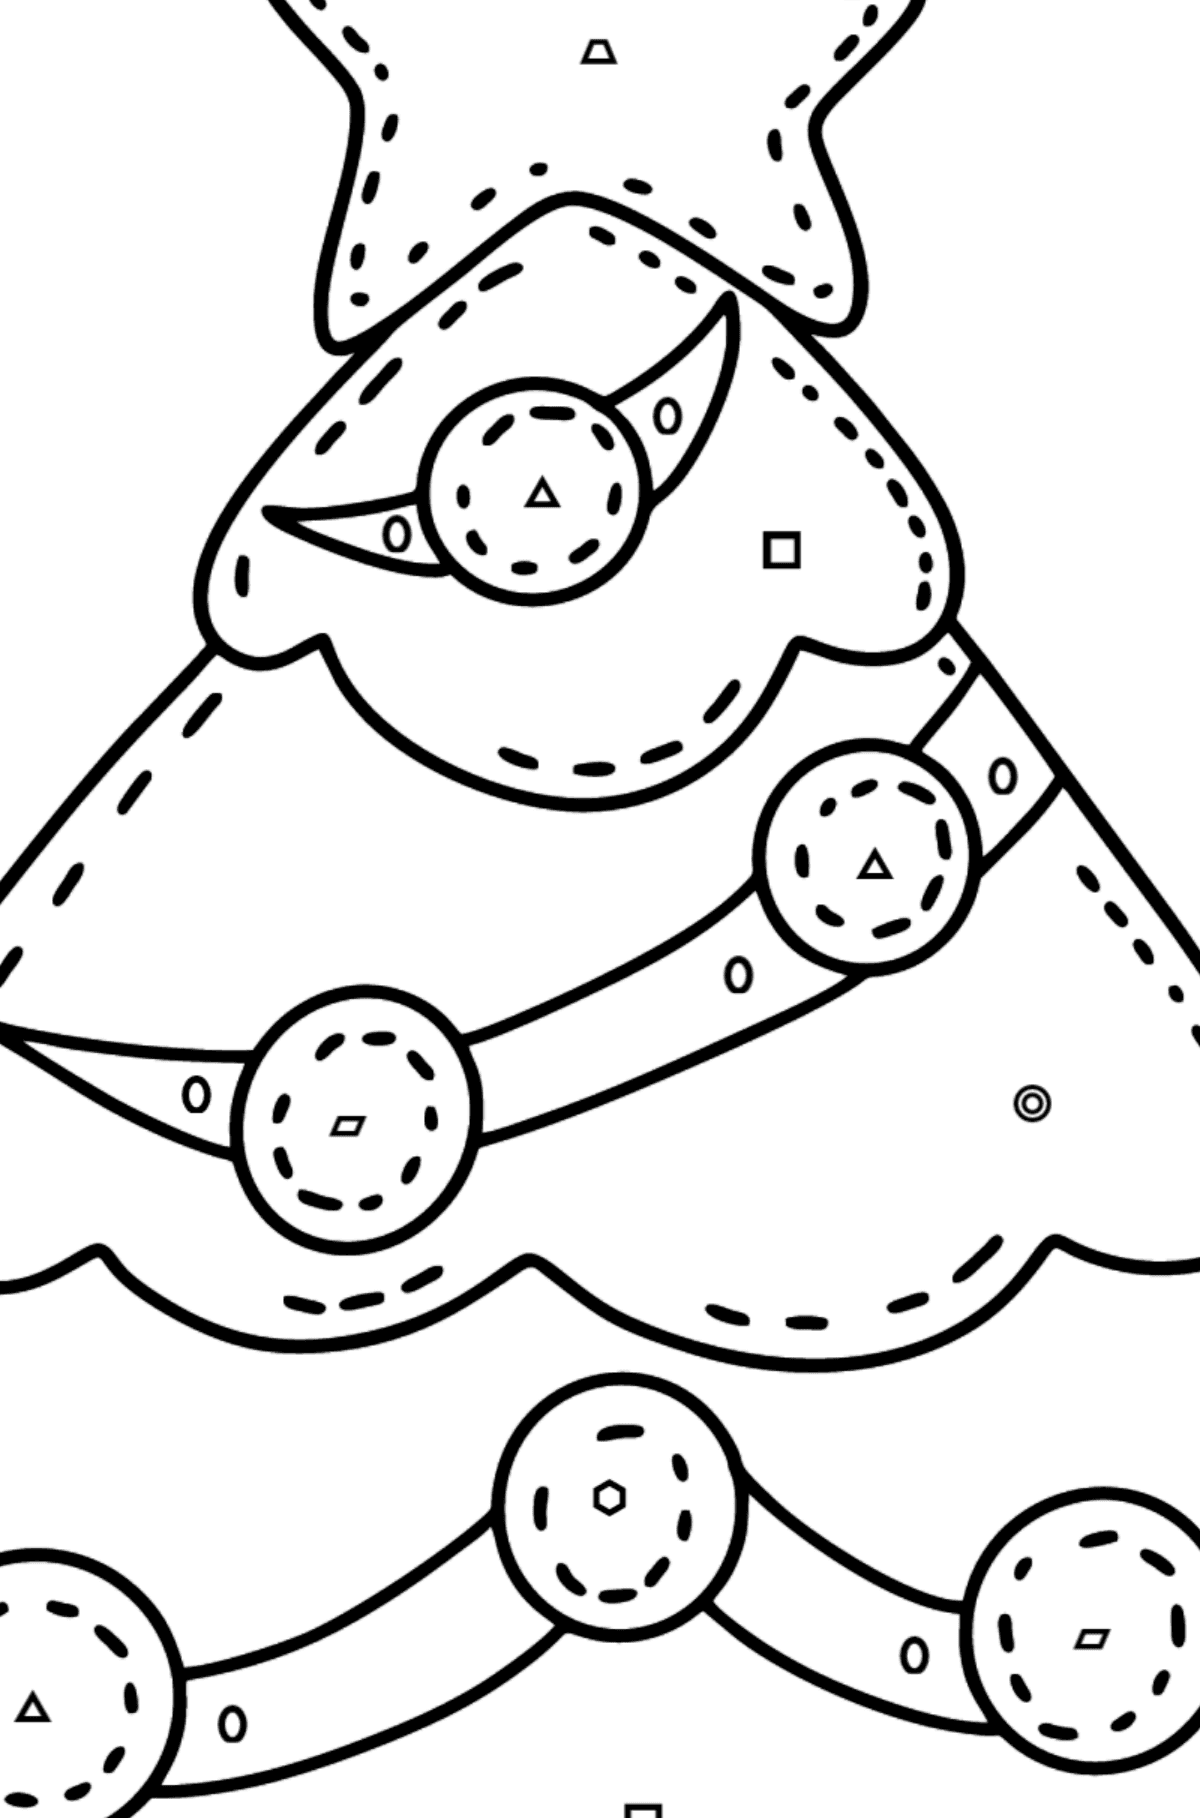 Coloriage - Sapin de Noël en feutre - Coloriage par Formes Géométriques pour les Enfants